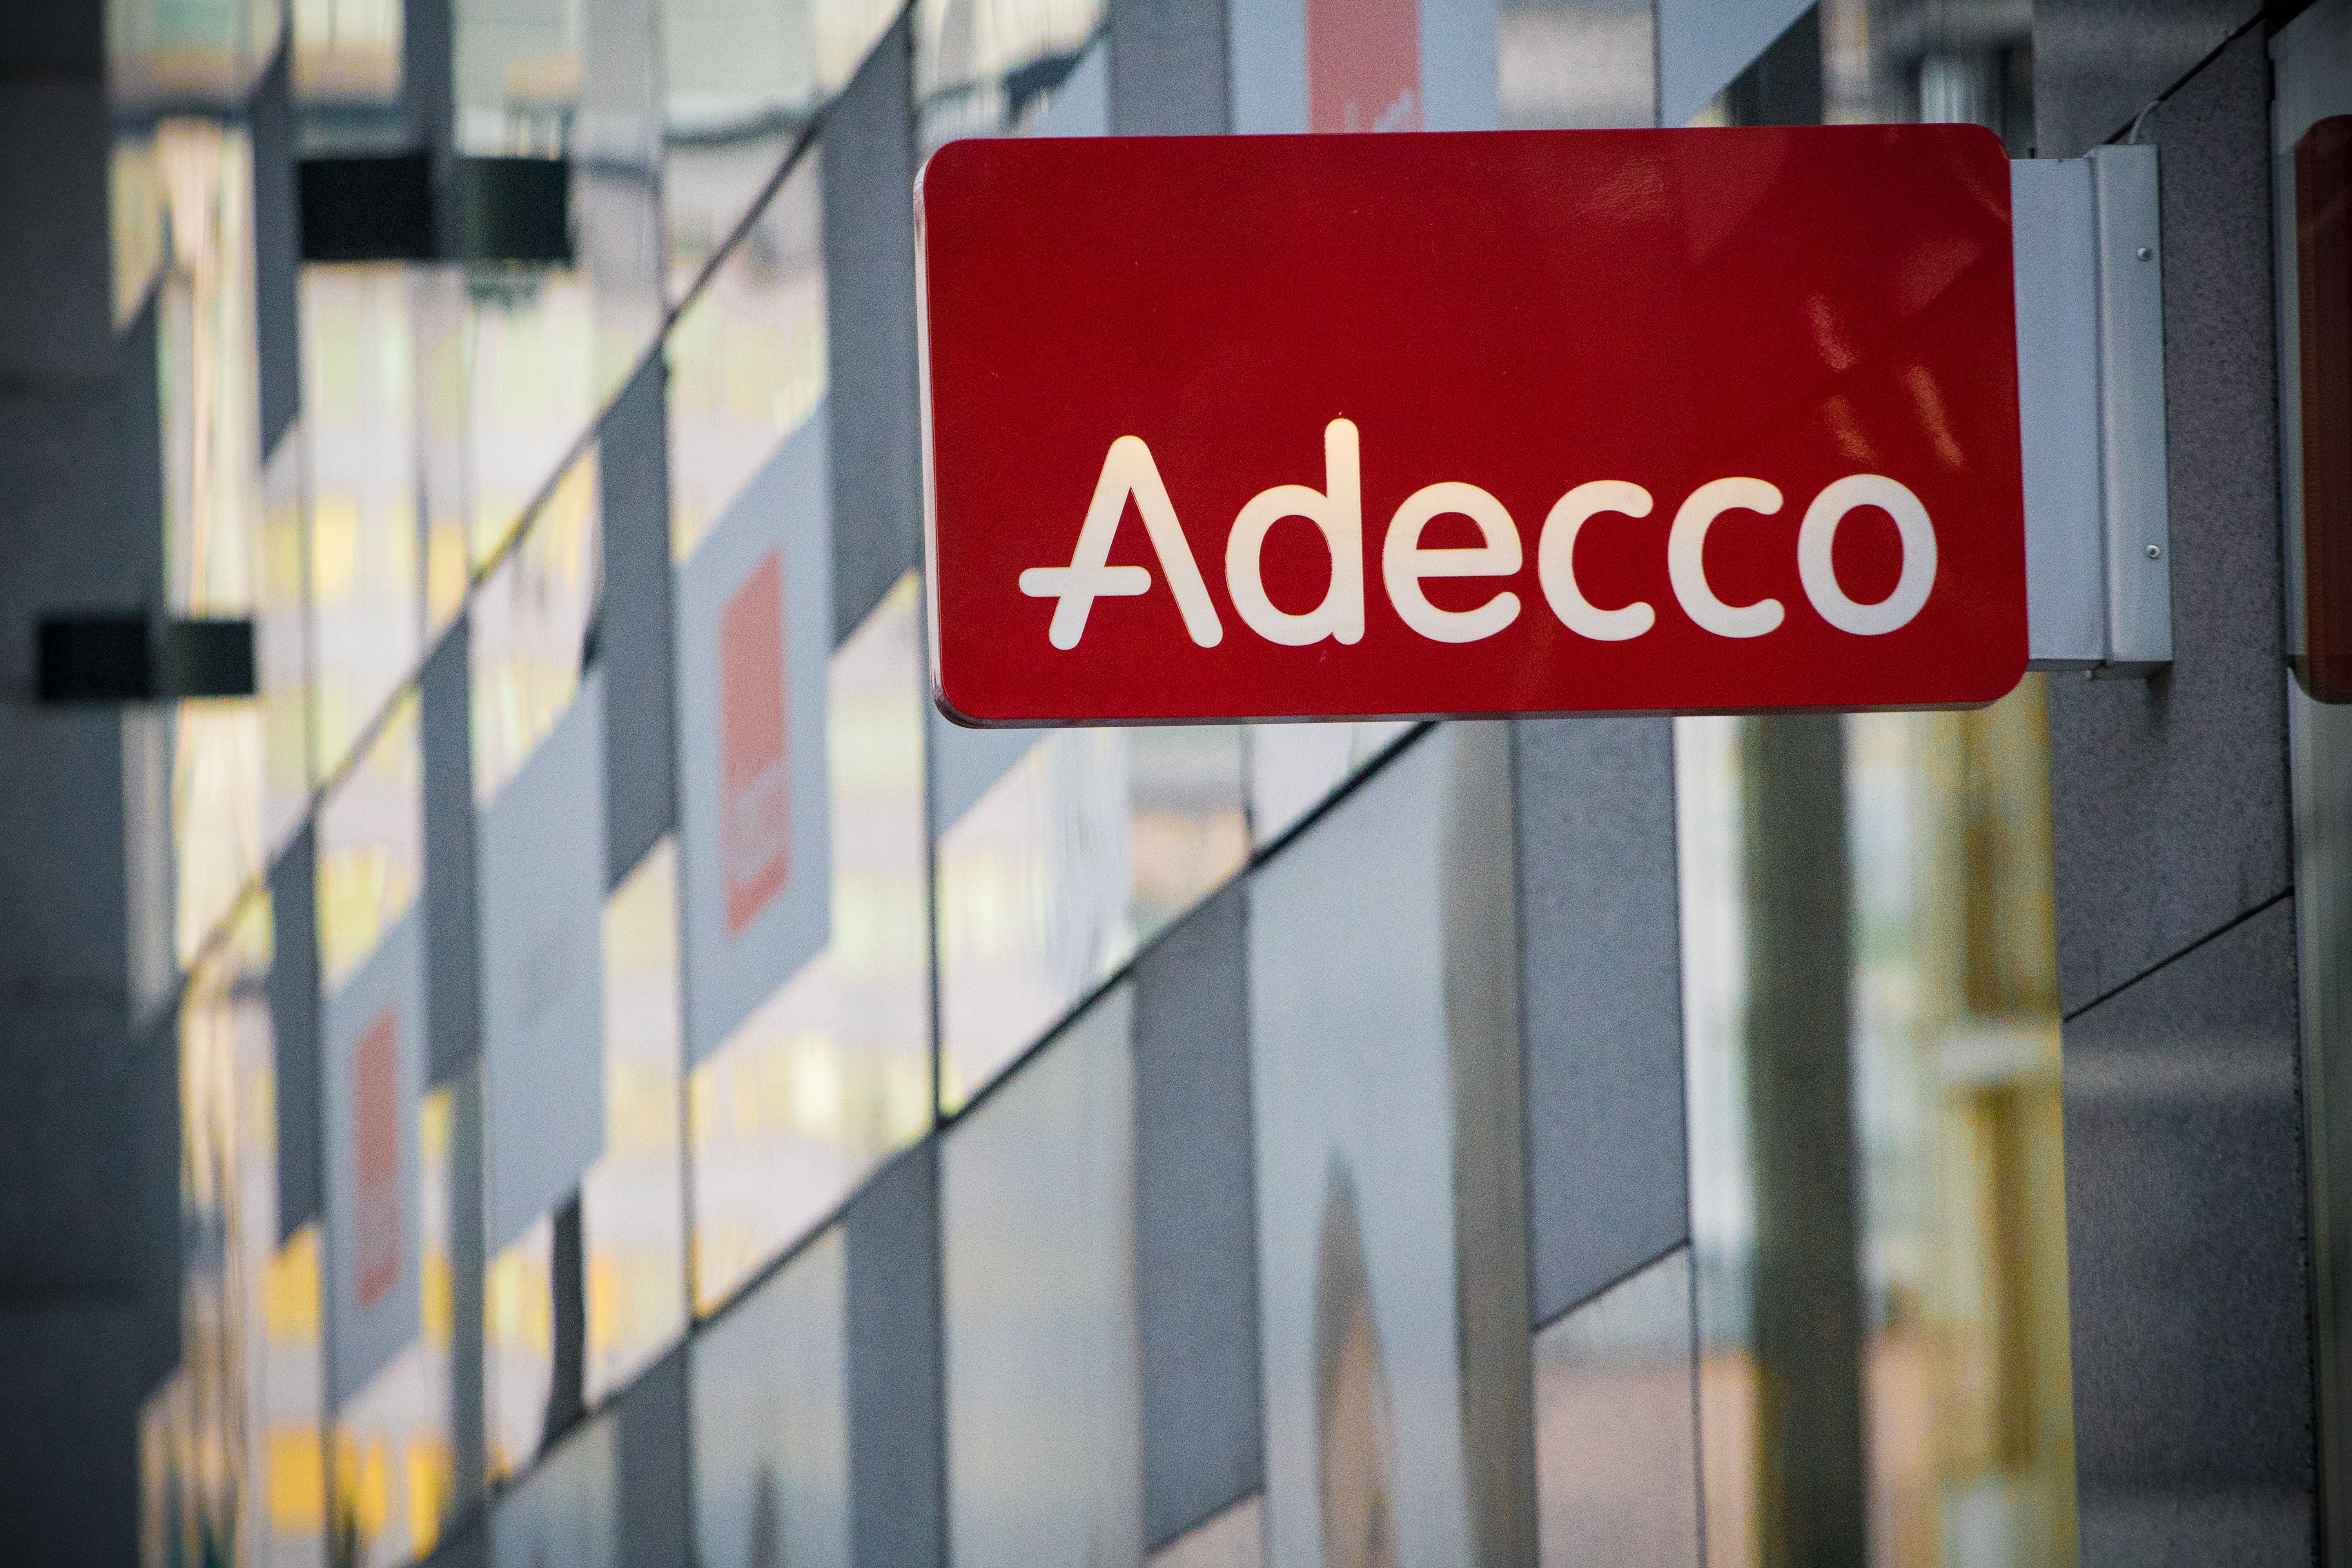     Intérim: Adecco condamné à une amende pour discrimination à l'embauche et fichage racial

